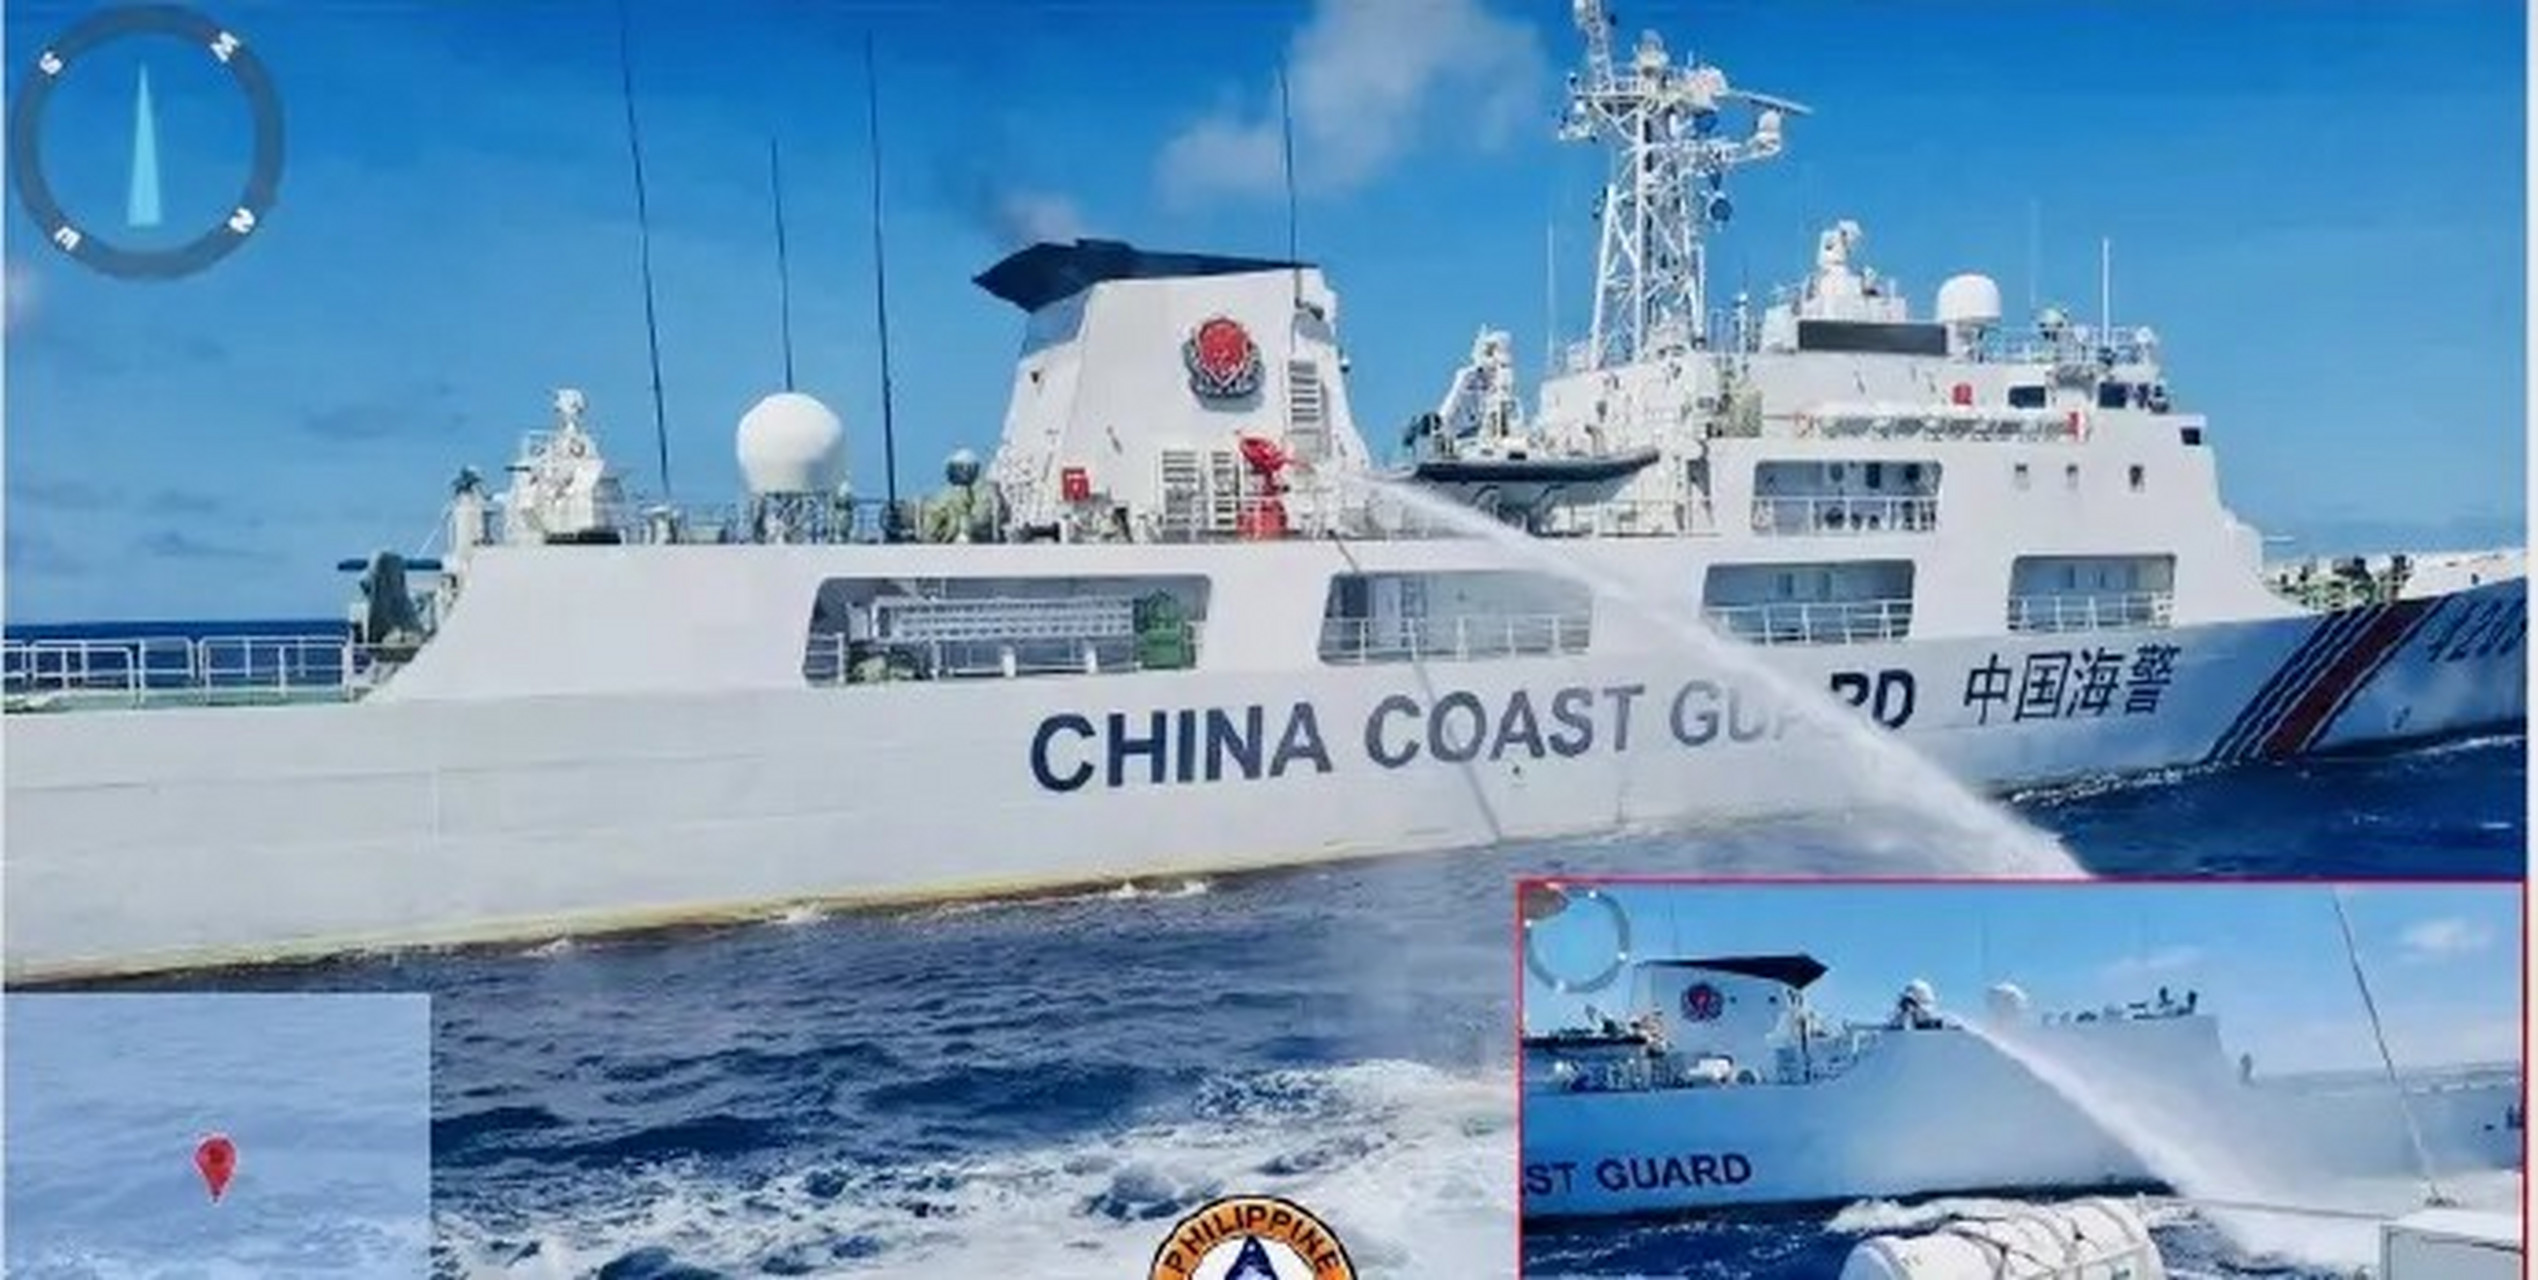 8月6日,菲律宾当局指责中国海警战舰在南海向菲律宾海岸警卫队船只